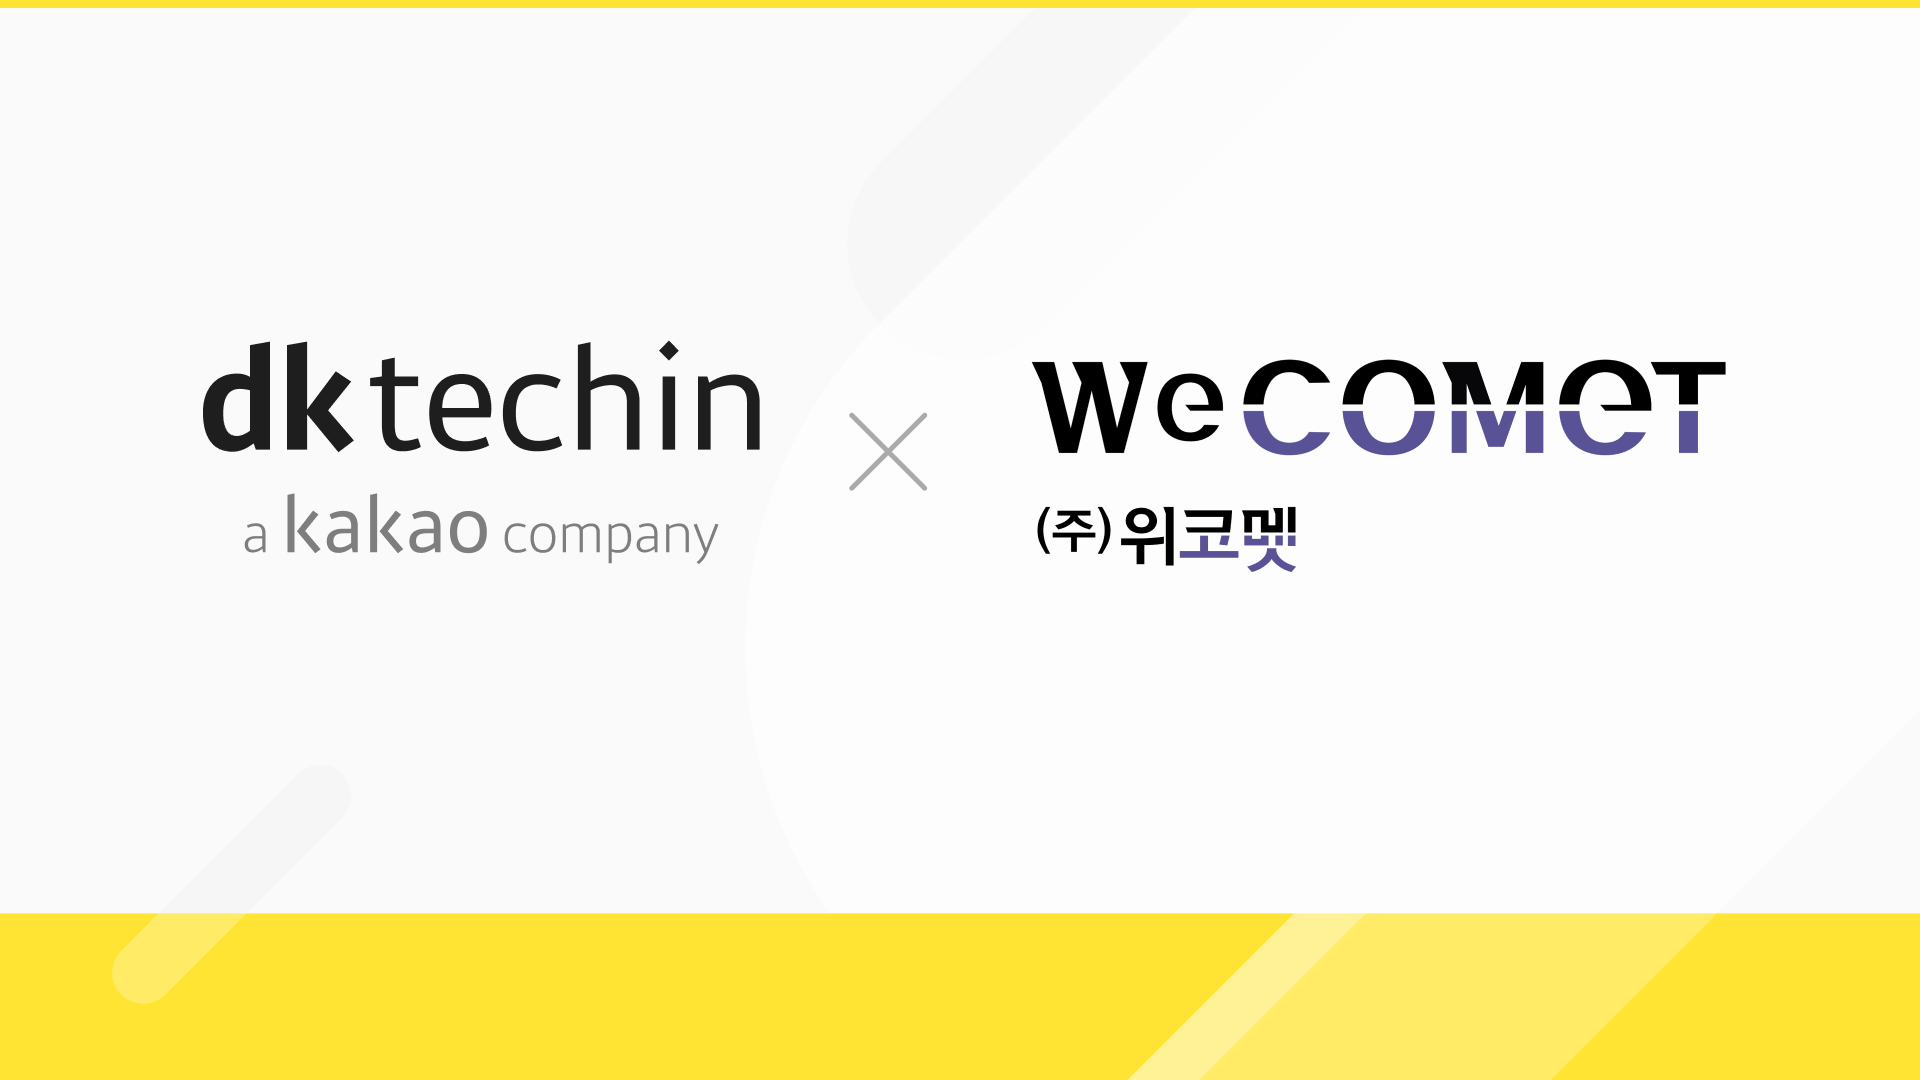 dktechin-WeCOMET logo.jpeg